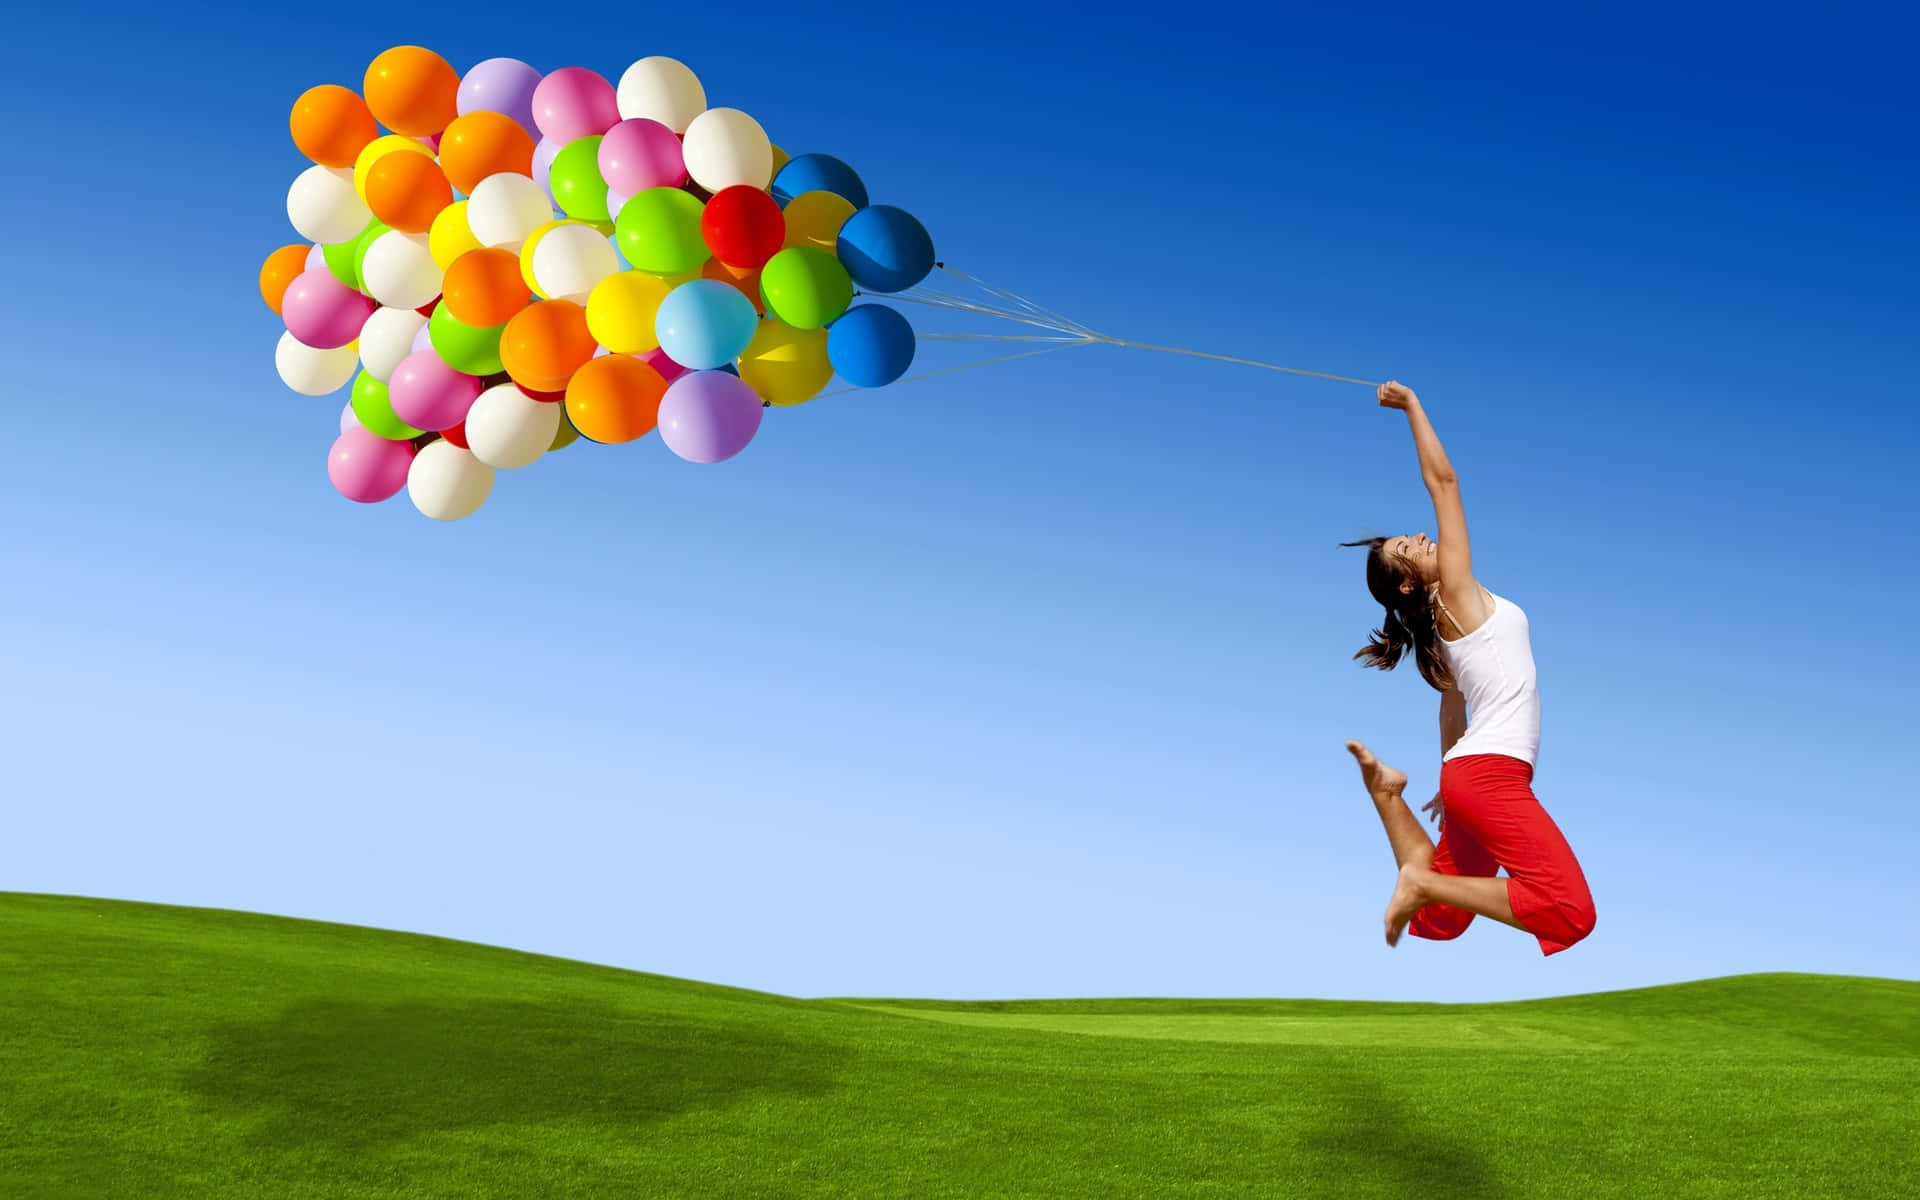 Wallpaper:  Kvinde hopper med balloner tapet.